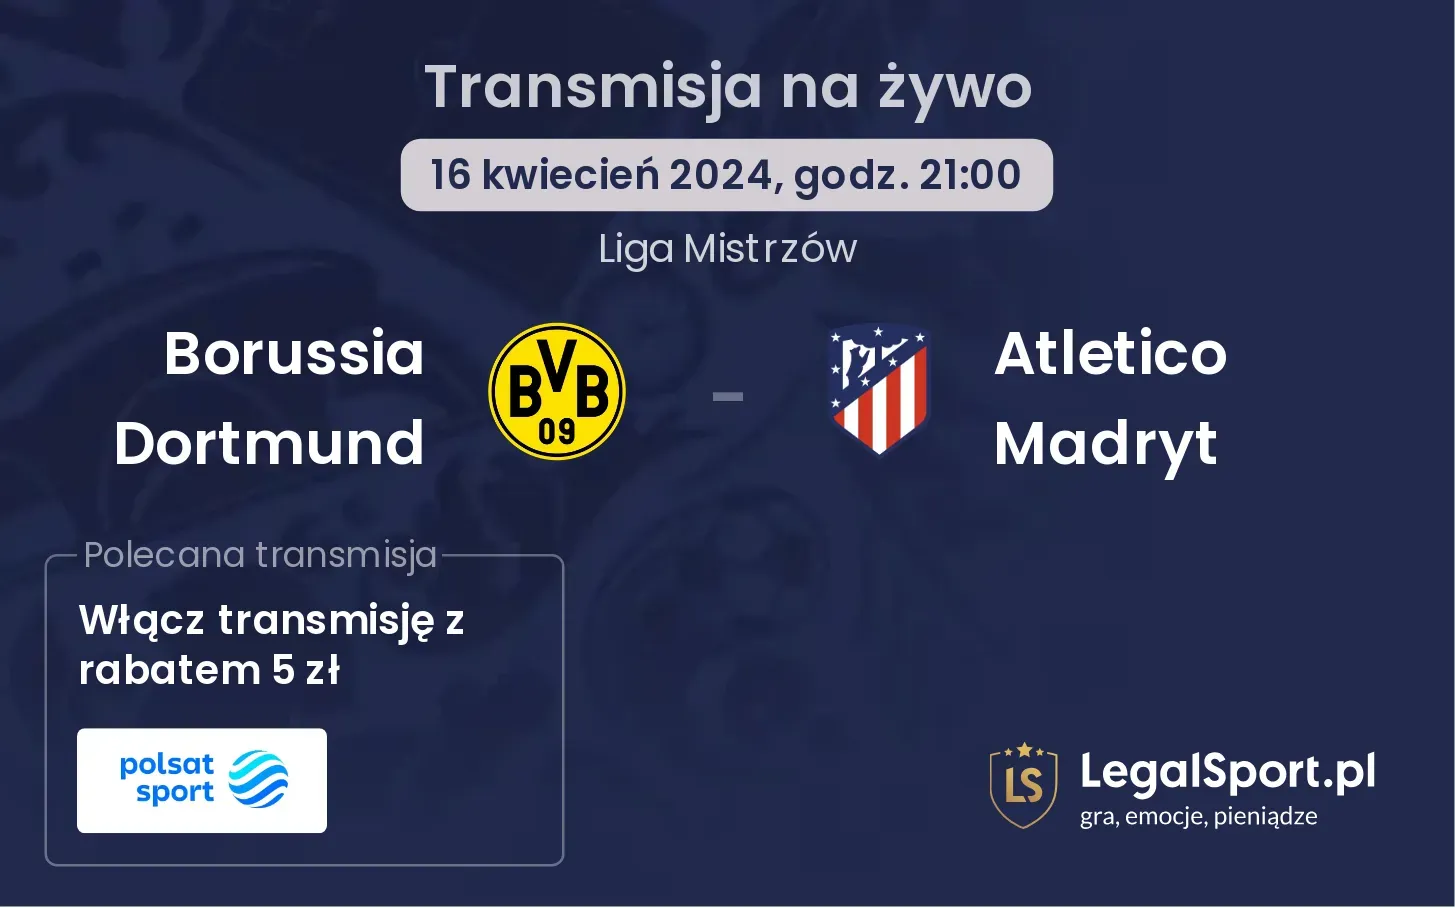 Borussia Dortmund - Atletico Madryt transmisja na żywo